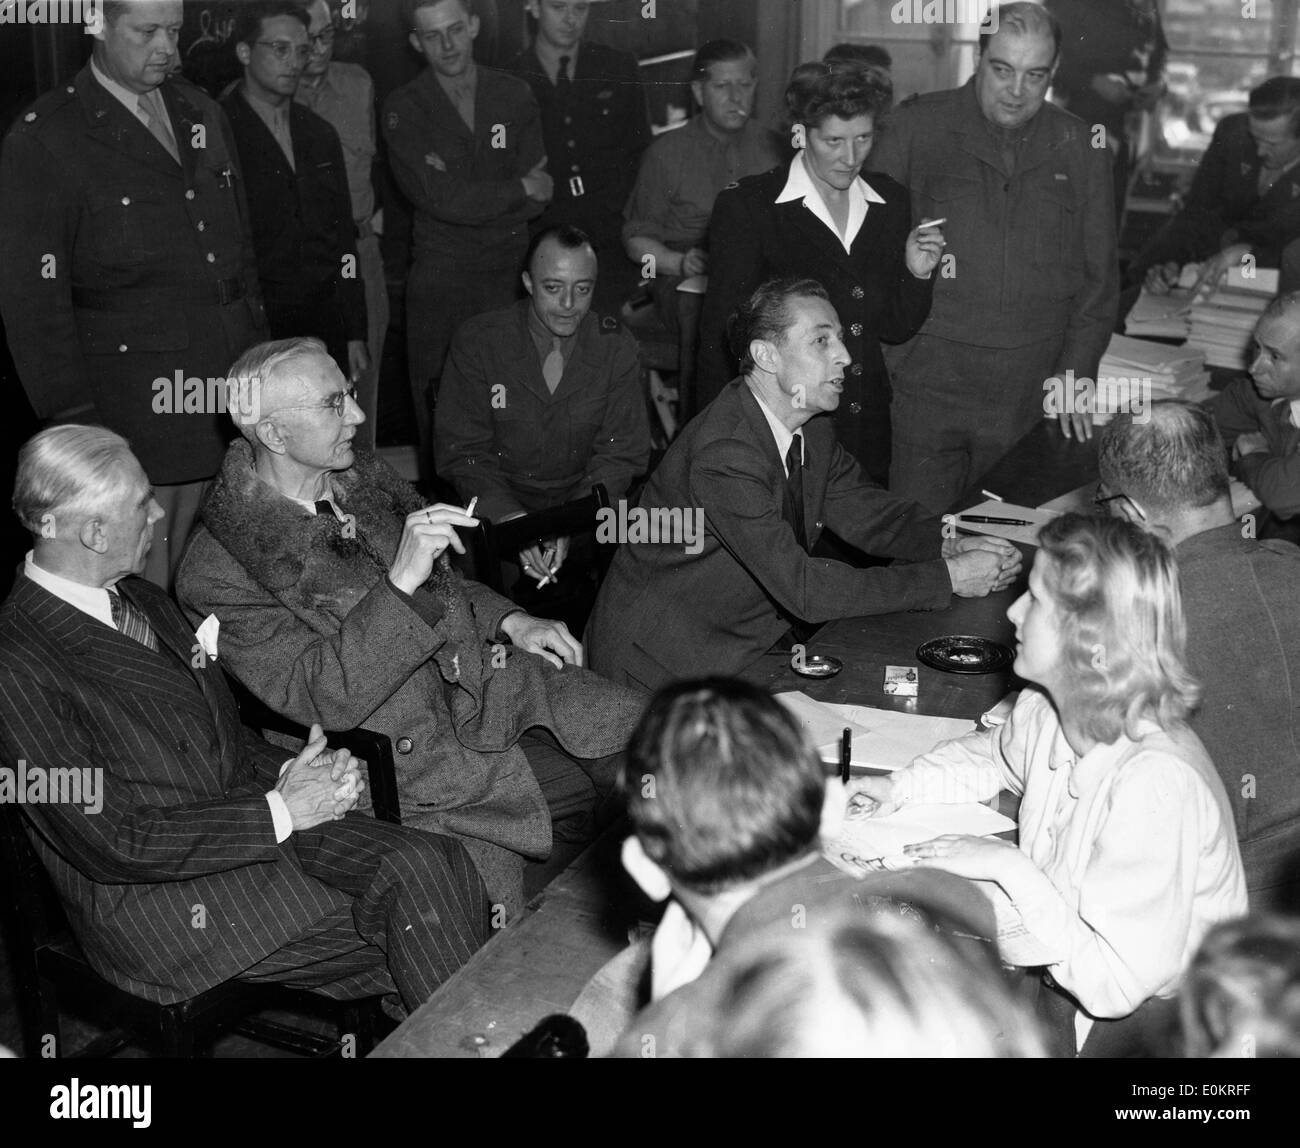 Franz Von Papen, Hjalmar Schacht, et Hans Fritzsche lors d'une conférence de presse Banque D'Images